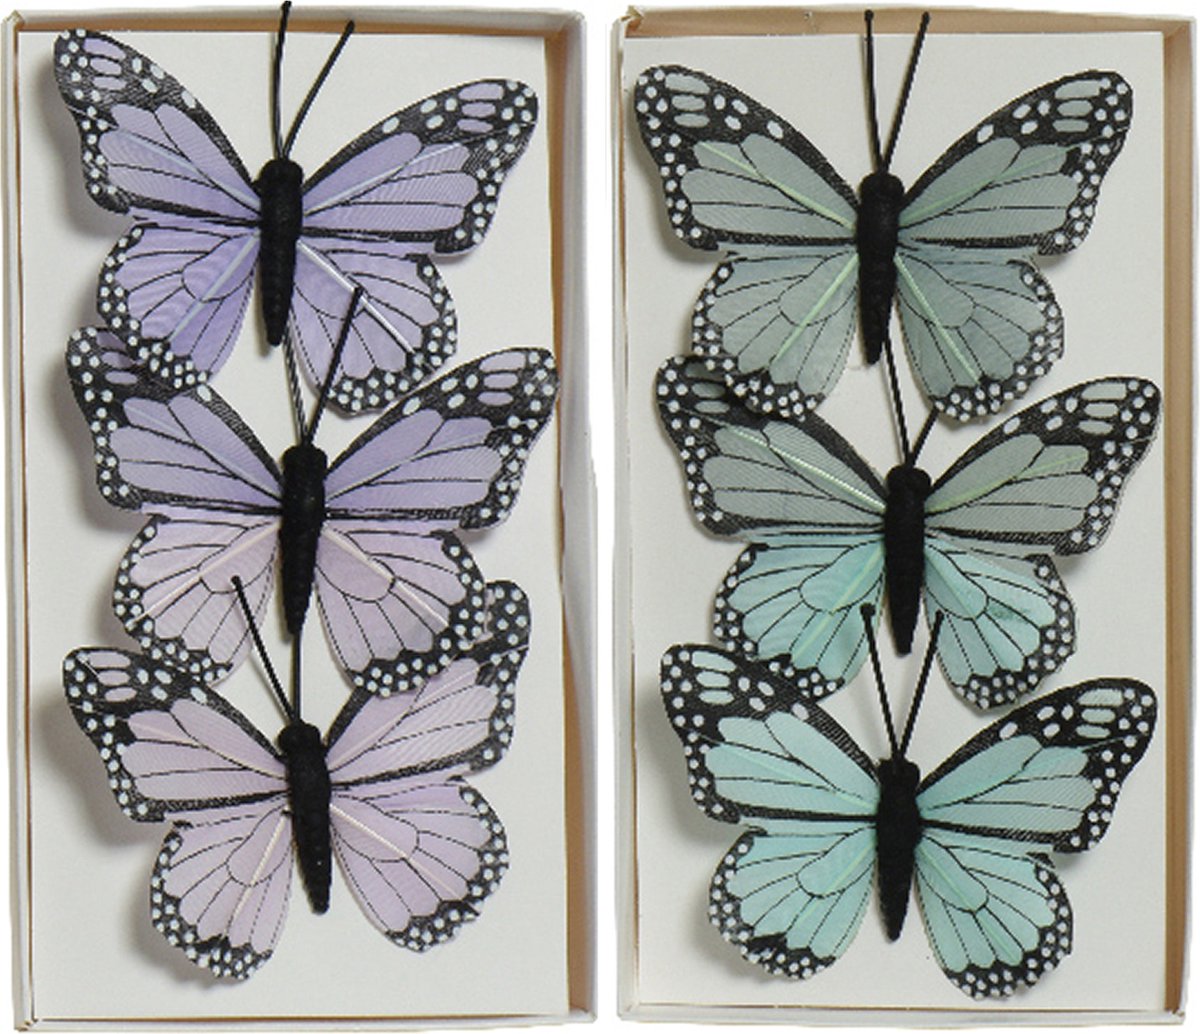 Decoratie vlinders op draad - 6x stuks - blauw - paars - 6 cm